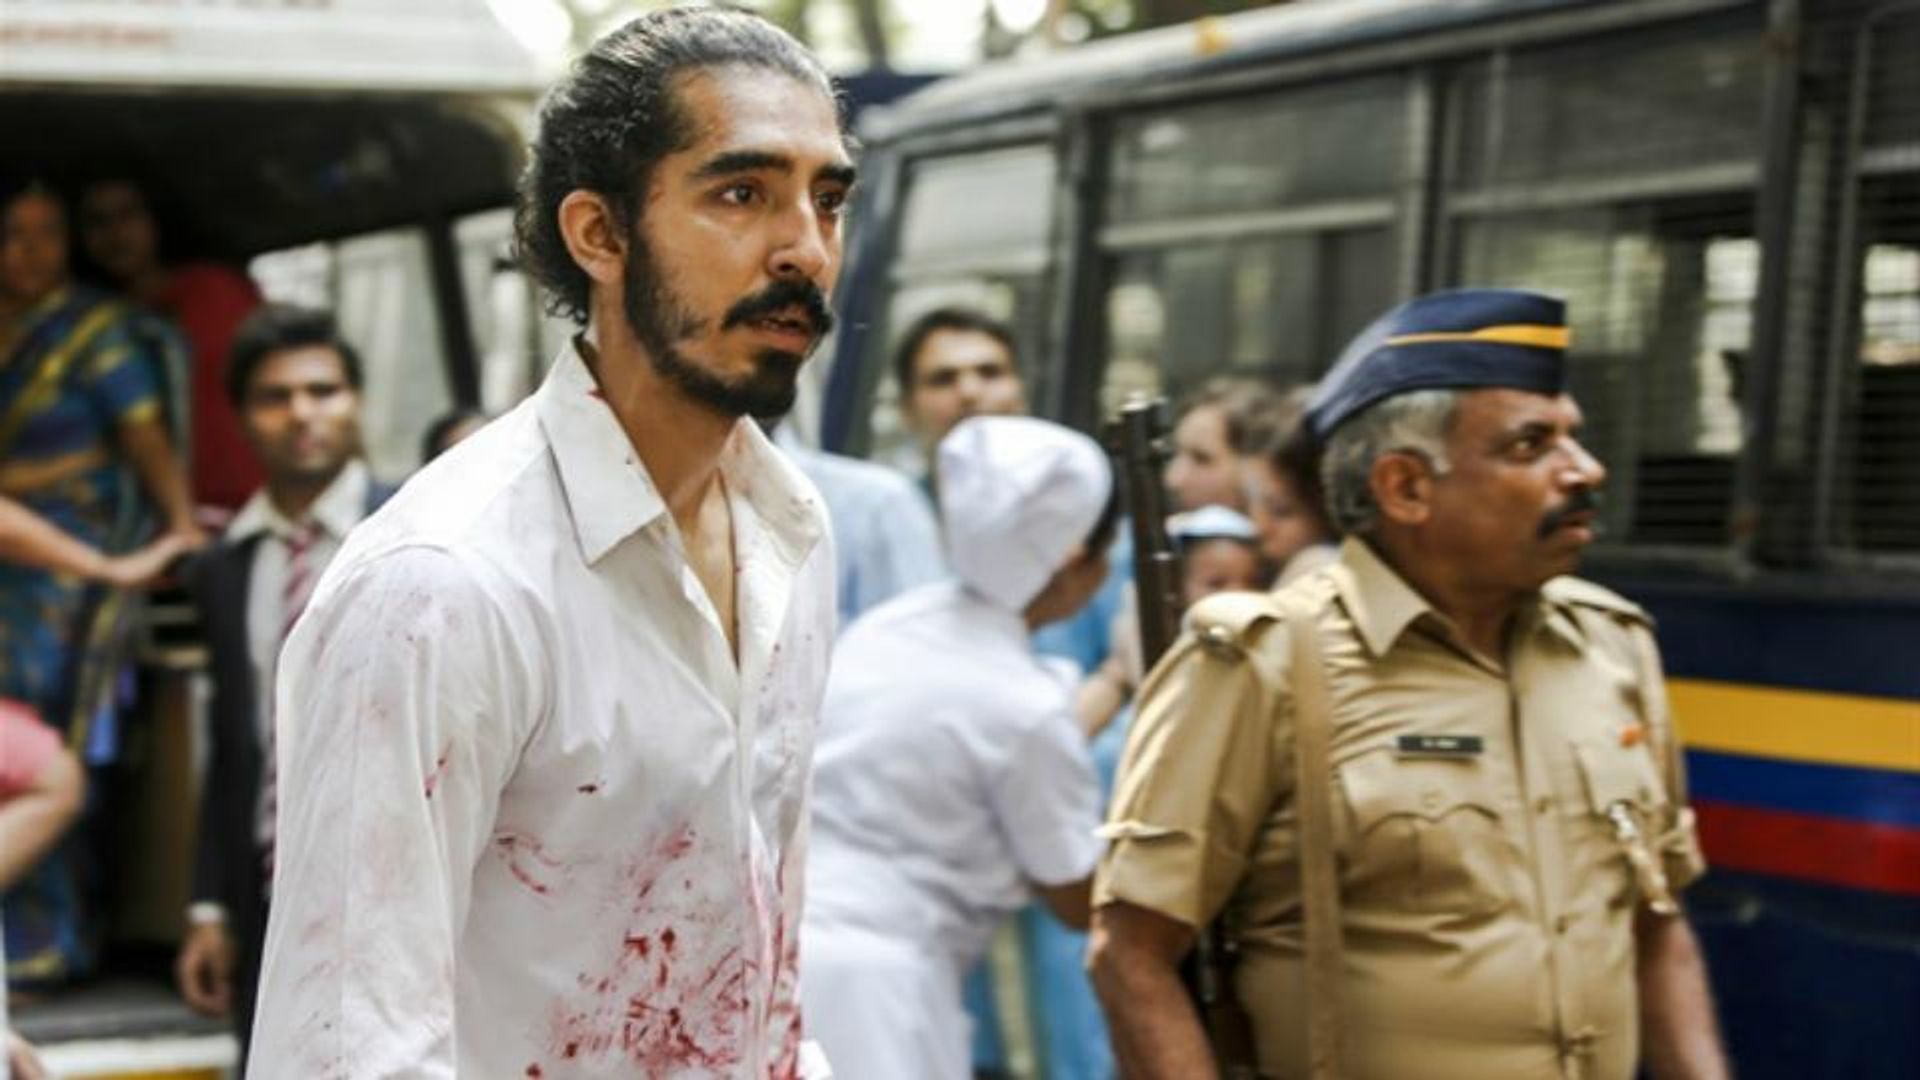 Нападение на отели. Отель Мумбаи: Противостояние (2018). Отель Мумбаи теракт 2008.